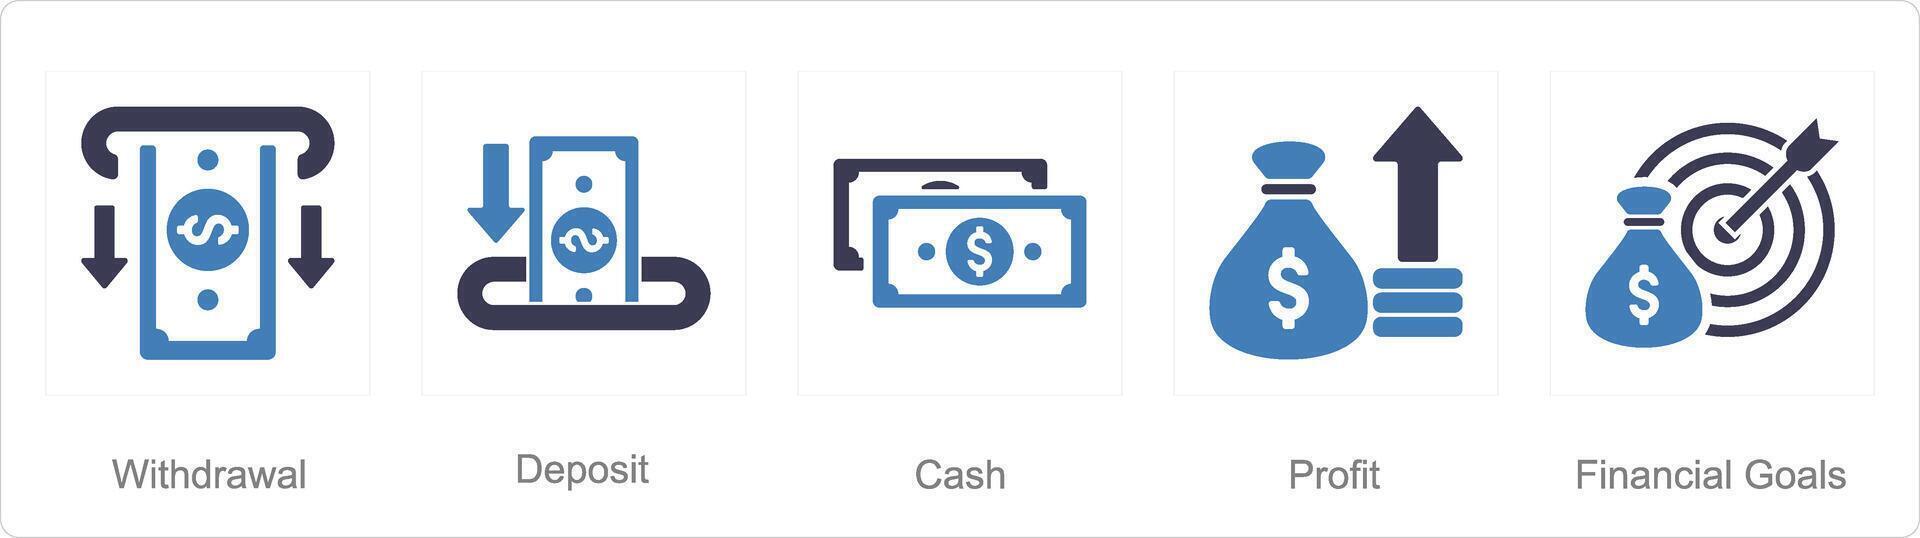 en uppsättning av 5 finansiera ikoner som uttag, deposition, kontanter vektor